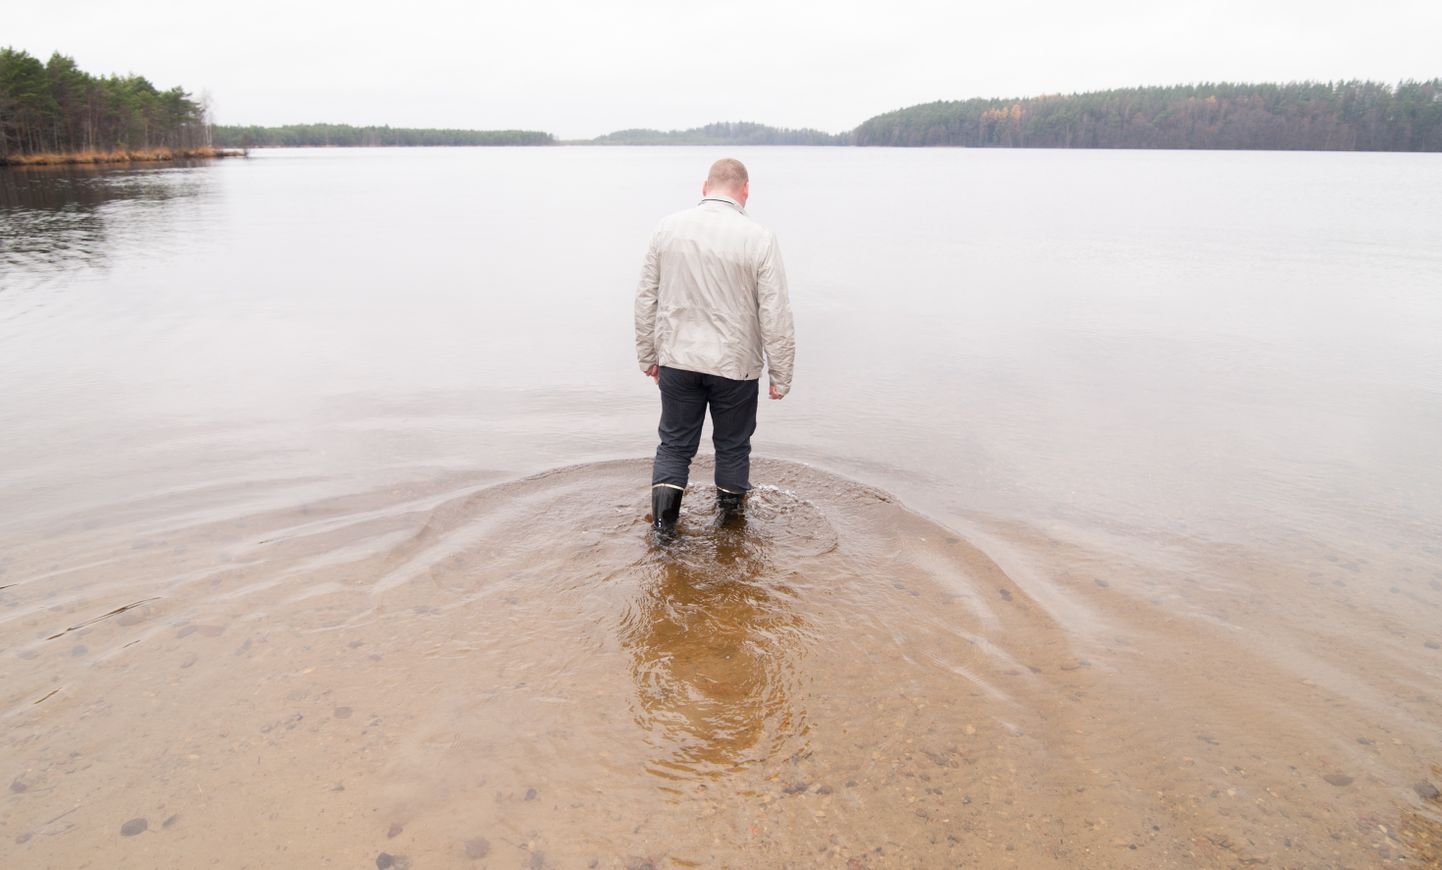 Уровень воды в озере Ульясте, питаемом в основном за счет осадков, последние 12 лет снижается, поскольку в длительные периоды засухи осадков выпадает меньше, чем испаряется воды с поверхности озера.